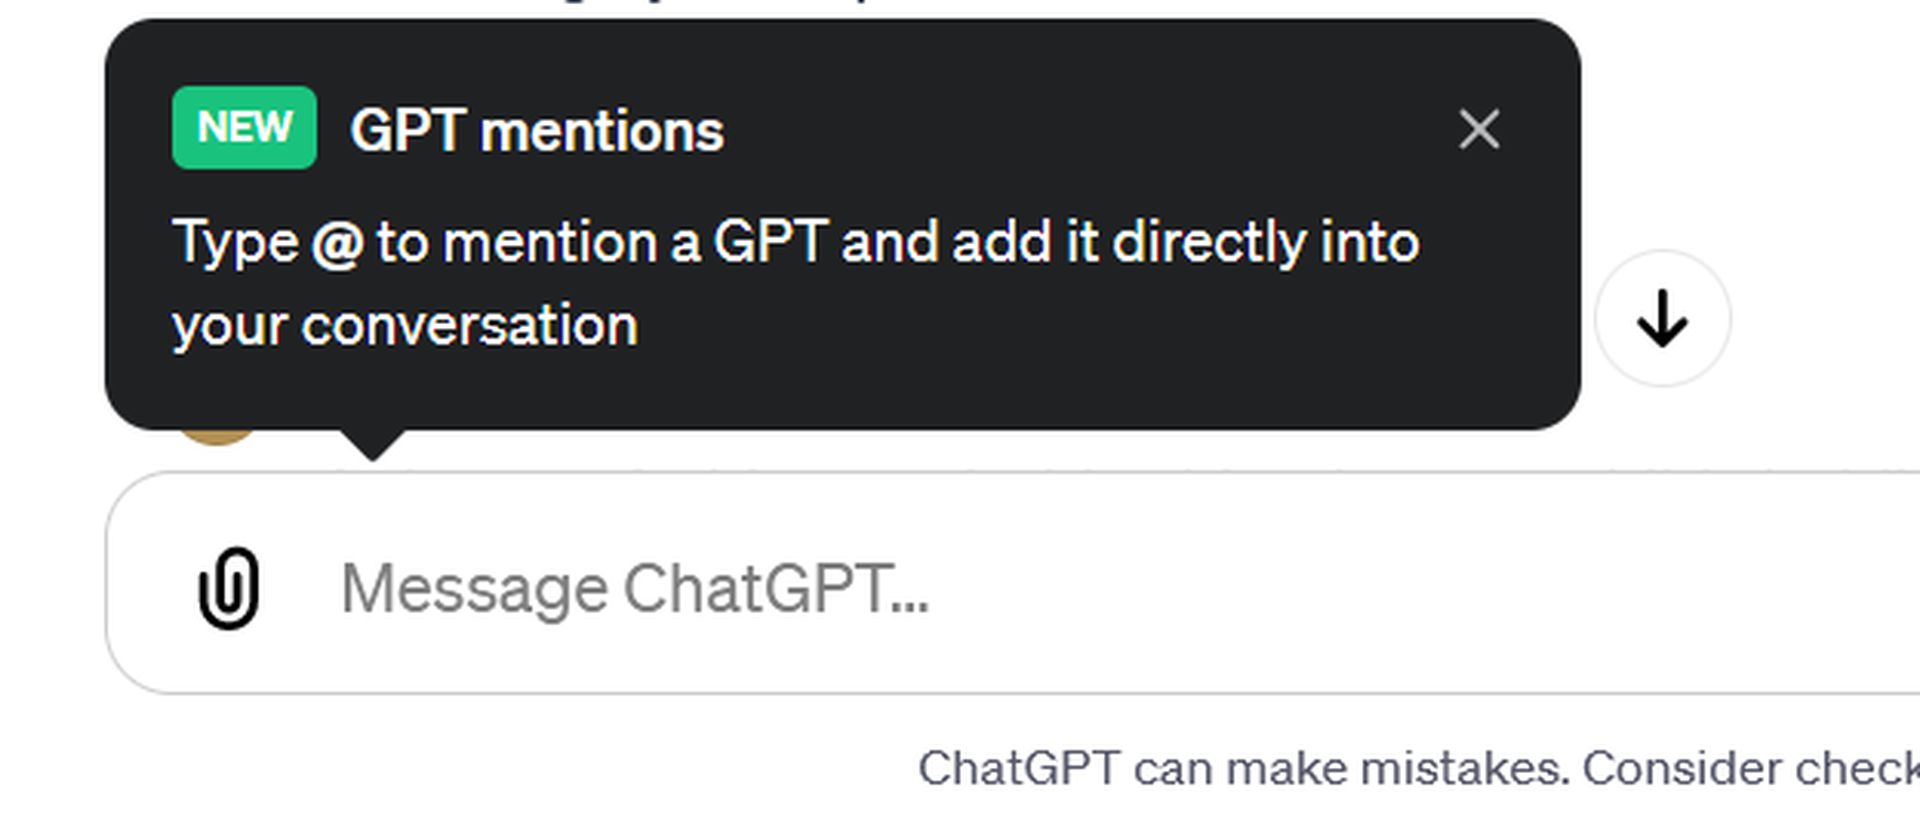 Comment utiliser les mentions GPT : La nouvelle fonctionnalité ChatGPT intègre plusieurs modèles d'IA pour des interactions dynamiques et voici comment !